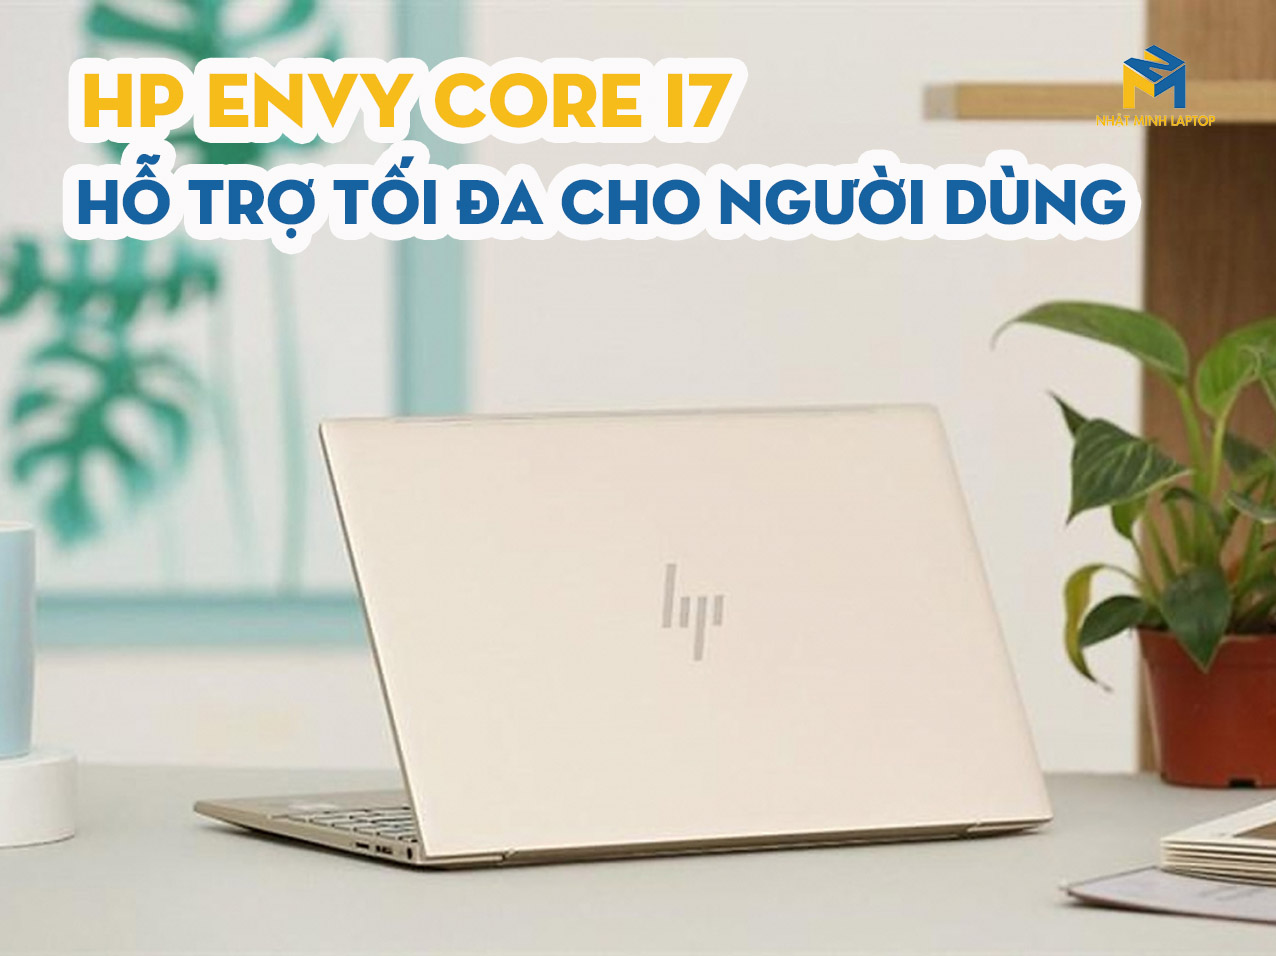 Laptop HP Envy 13 Core i7 hỗ trợ tối đa cho người dùng